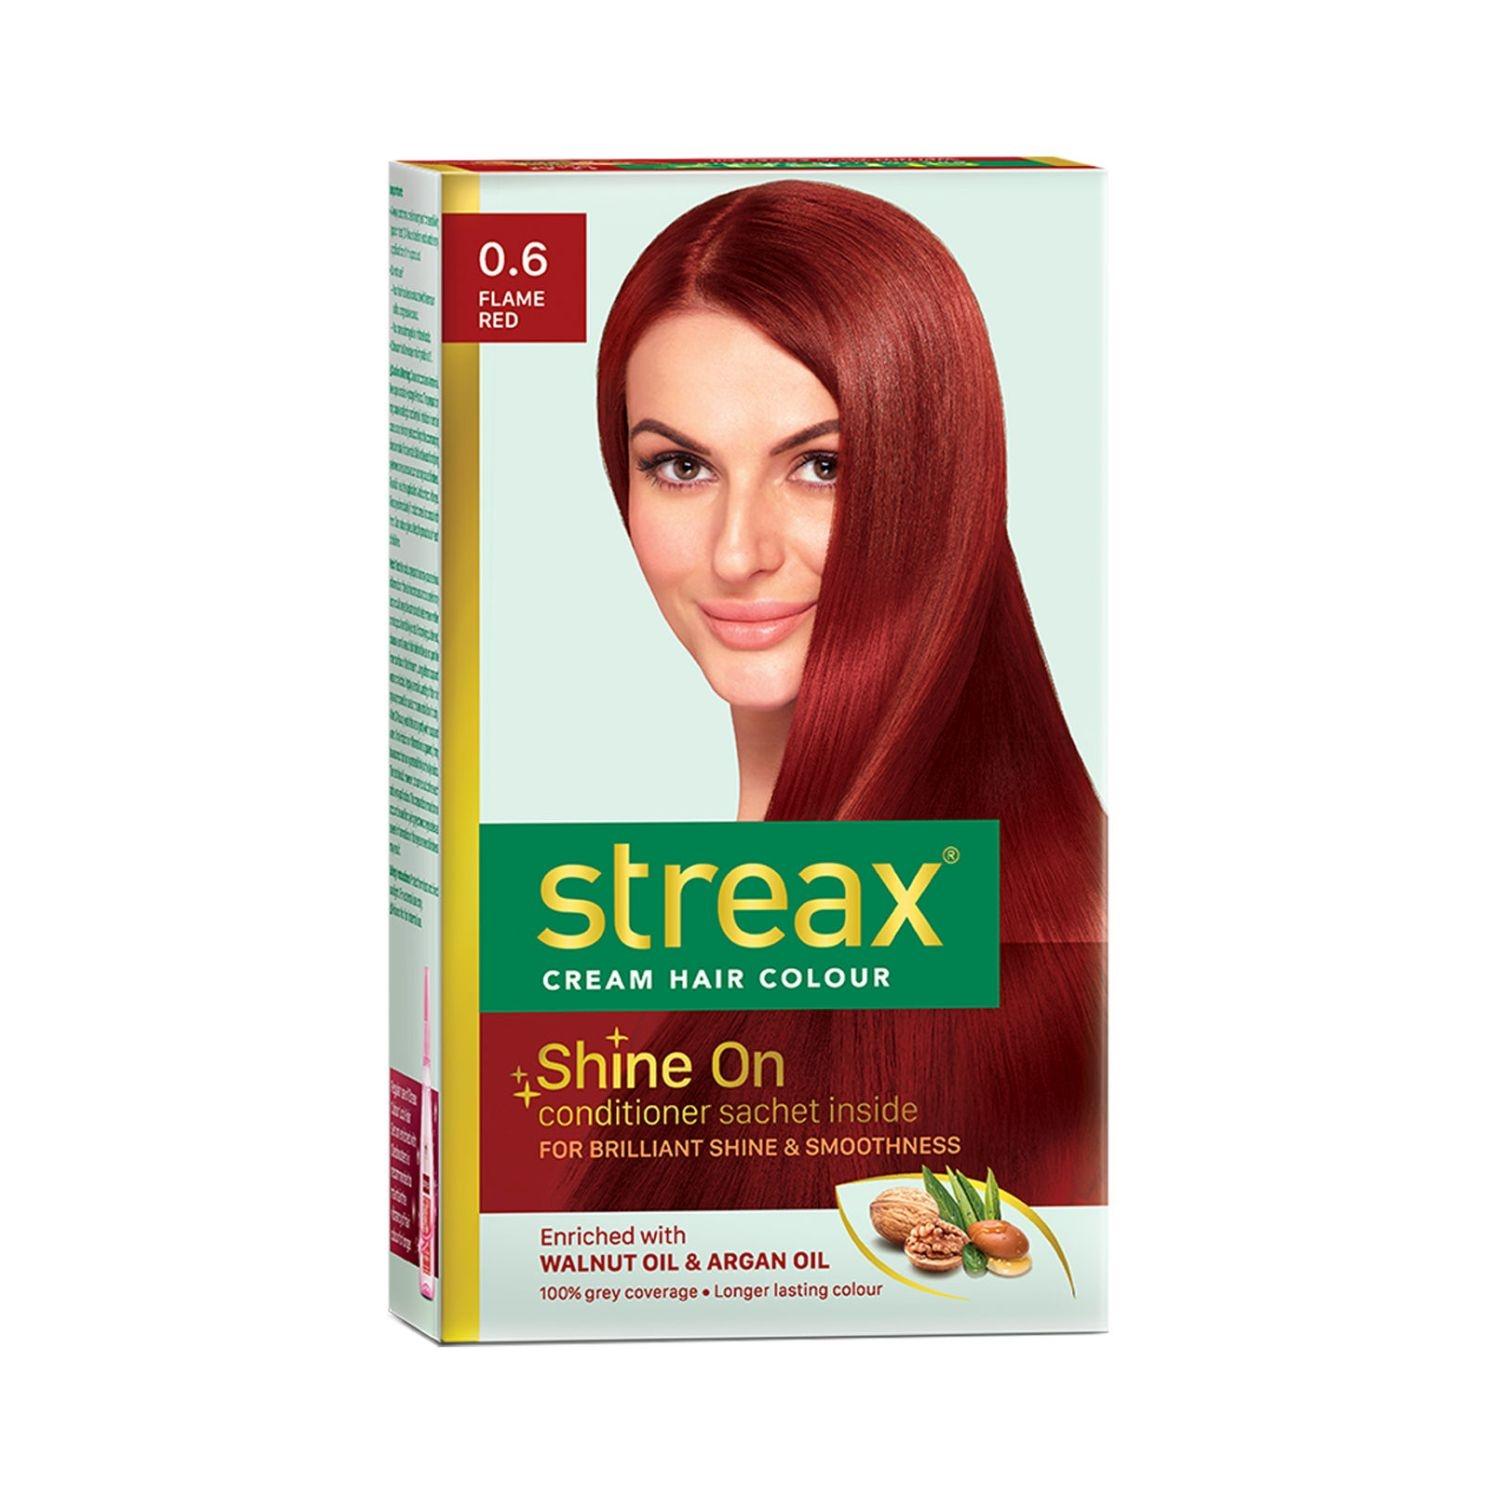 streax hair colour - 0.6 flame red (35gm+25ml)